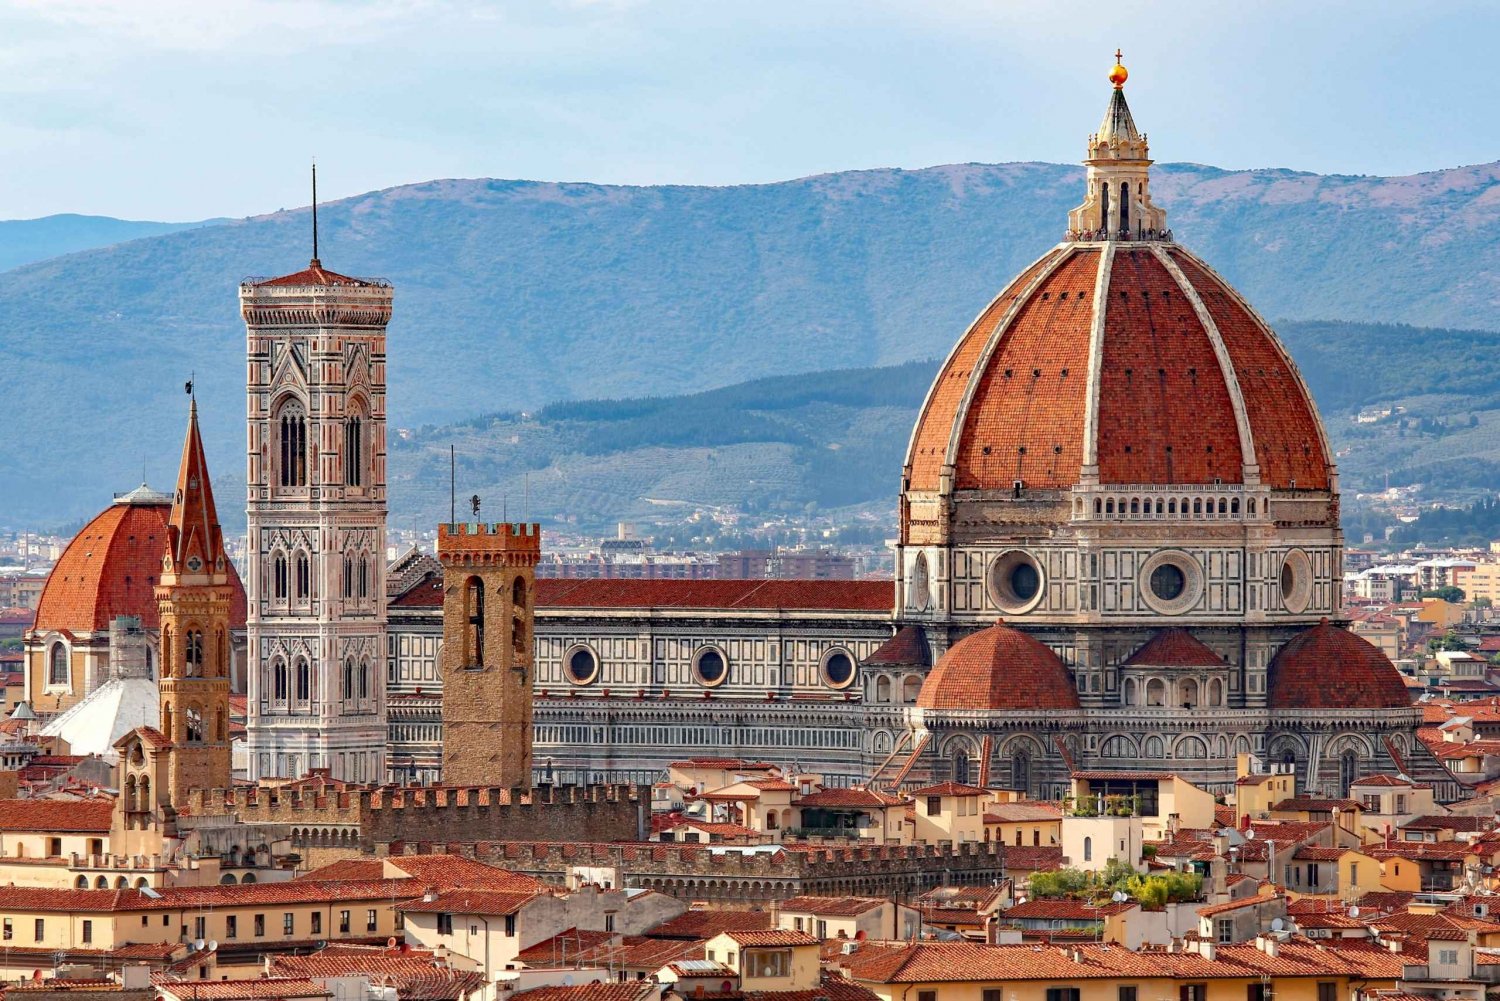 Firenze: Omvisning i Accademia, kuppelbestigning og katedralmuseum